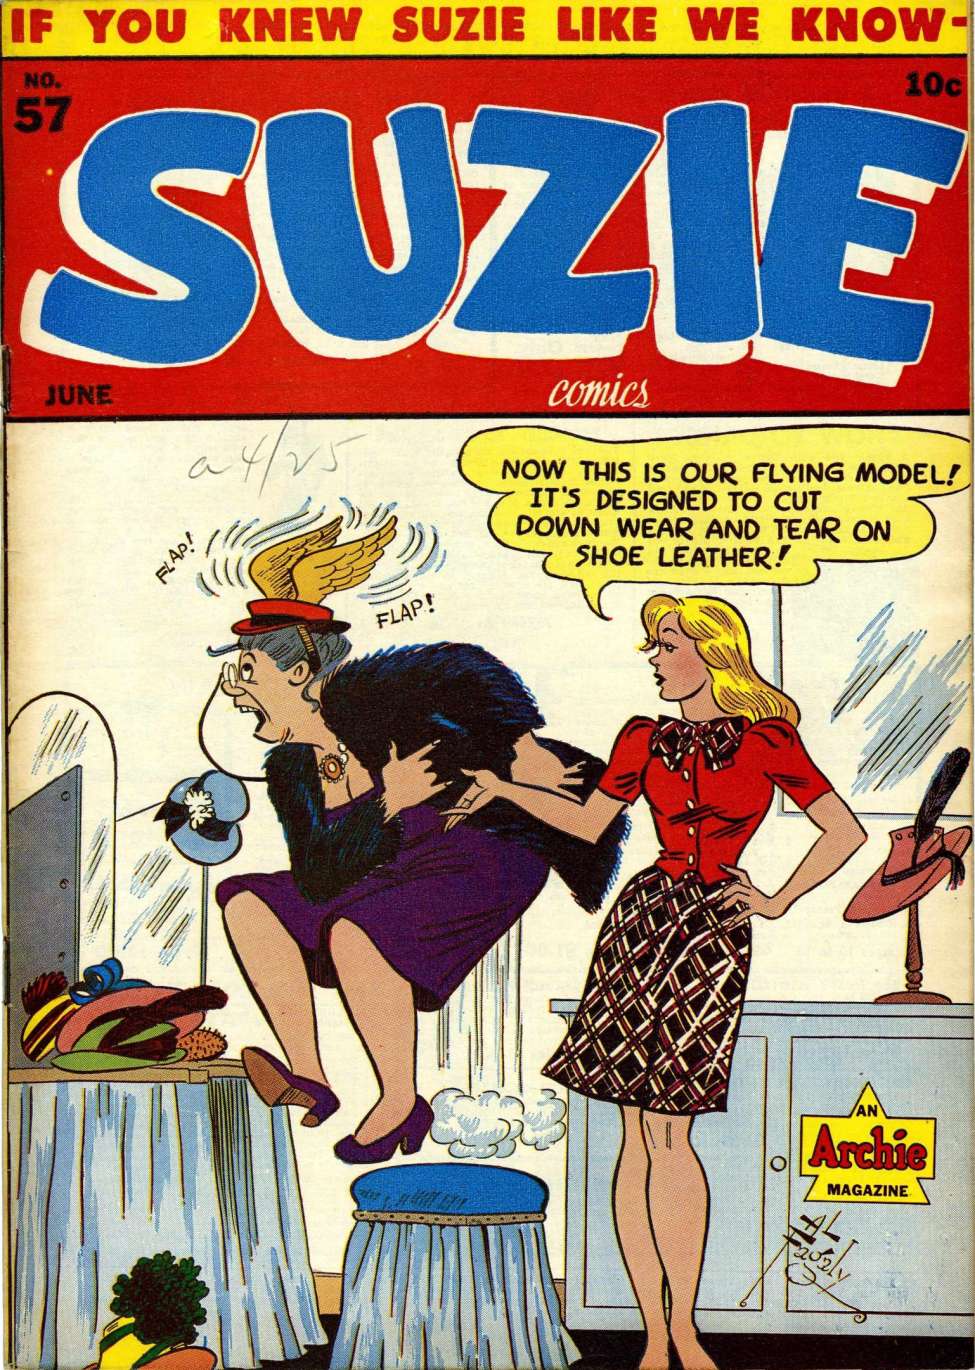 Comic Book Cover For Suzie Comics 57